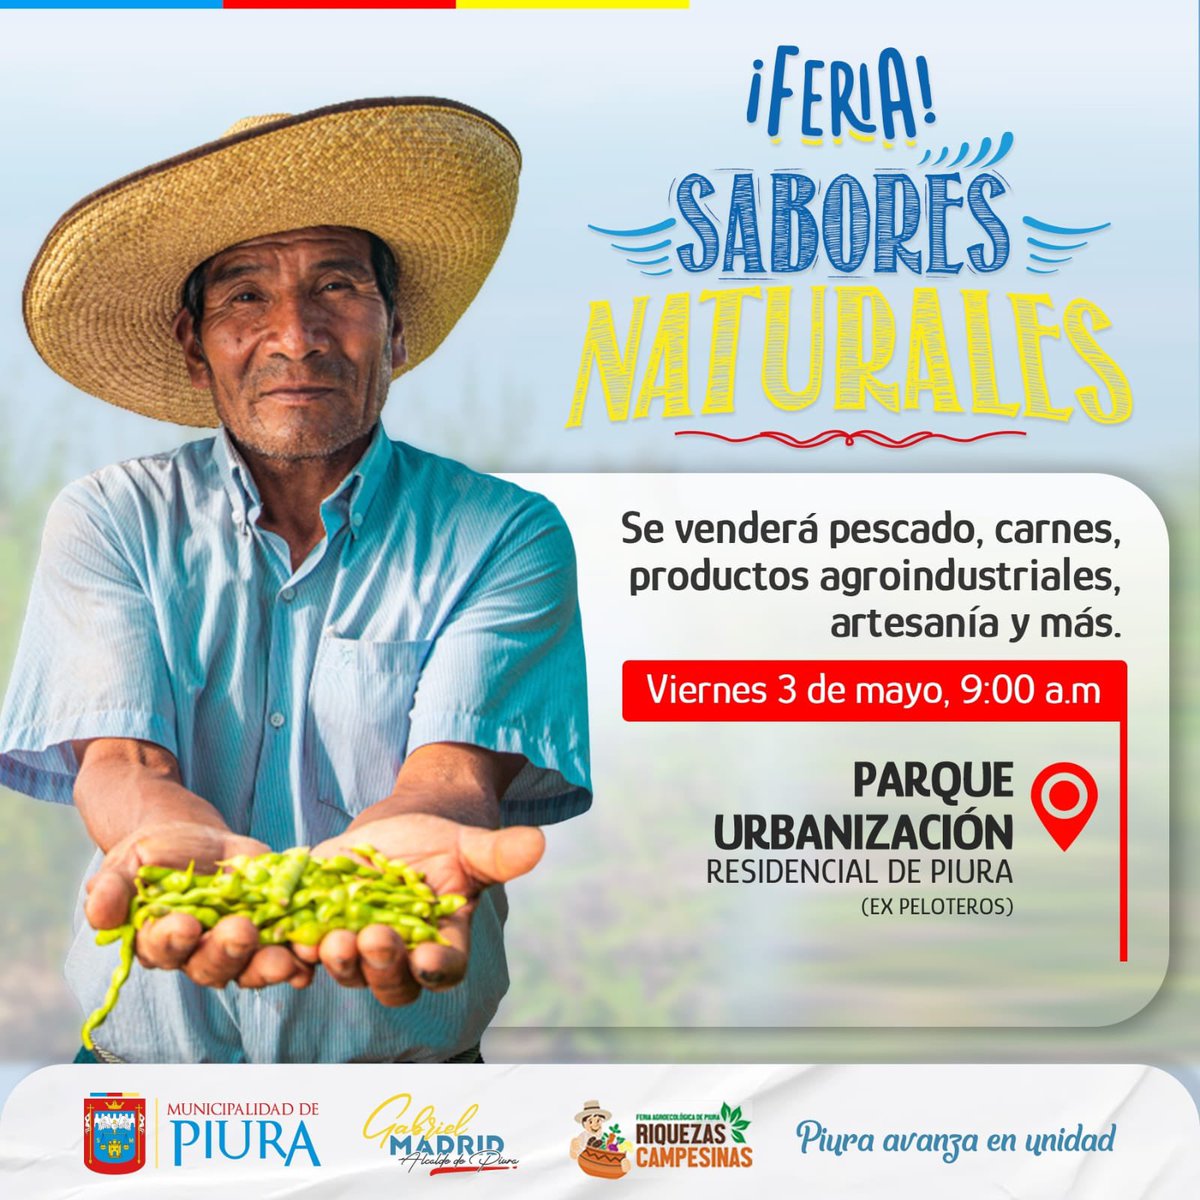 Porfa Ayuden a difundir esta feria para que llegue a más personas y puedan vender sus productos 🙌🏽
#piura #feria #campesino #productosnaturales